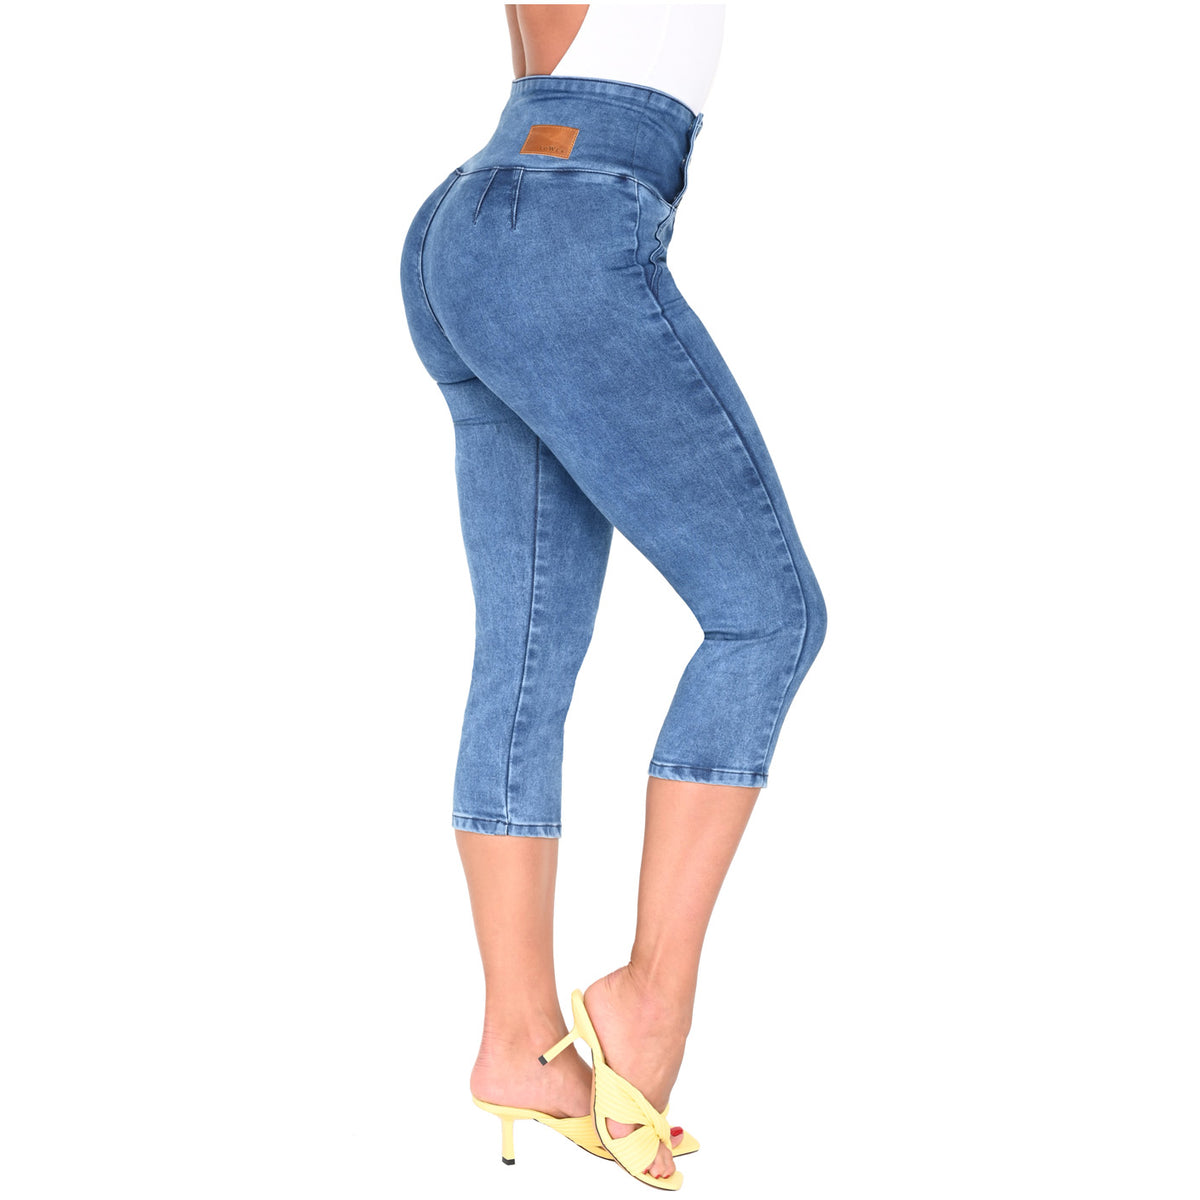 JEAN FAJA LEVANTACOLA (con faja interna), tenemos una amplia variedad de  jeans con benefecios unicos ✨🥰 - BENEFICIOS: ✓Levanta tus glúteos! ✓Forma  tus piernas! ✓Te combina con cualquier outfit.